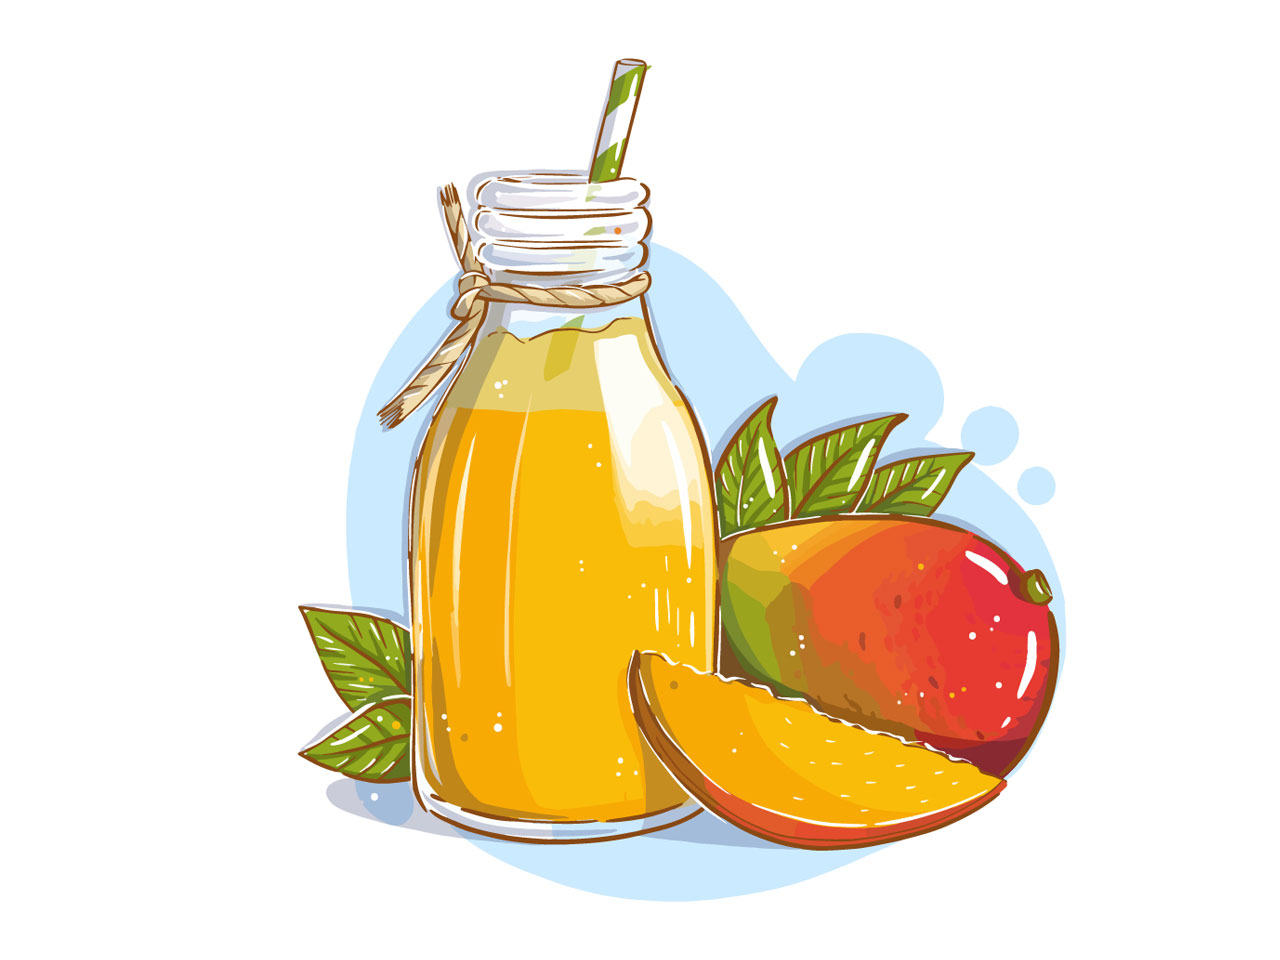 Mango juice glass bottle with straw mango fruits cartoon